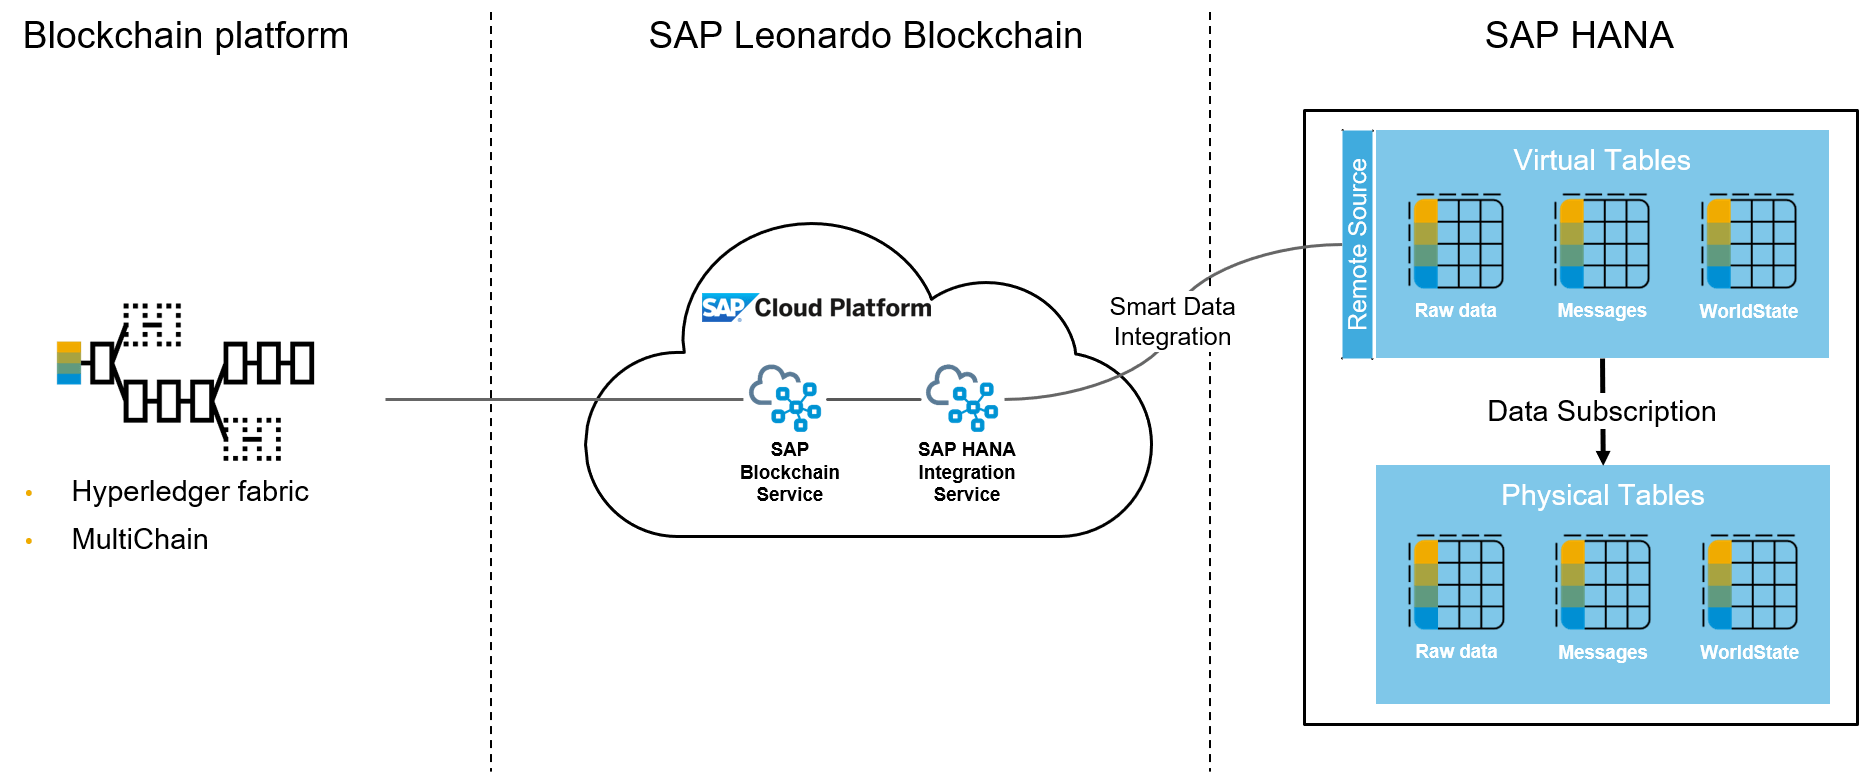 SAP Blockchain Logo - SAP HANA Blockchain: An introduction